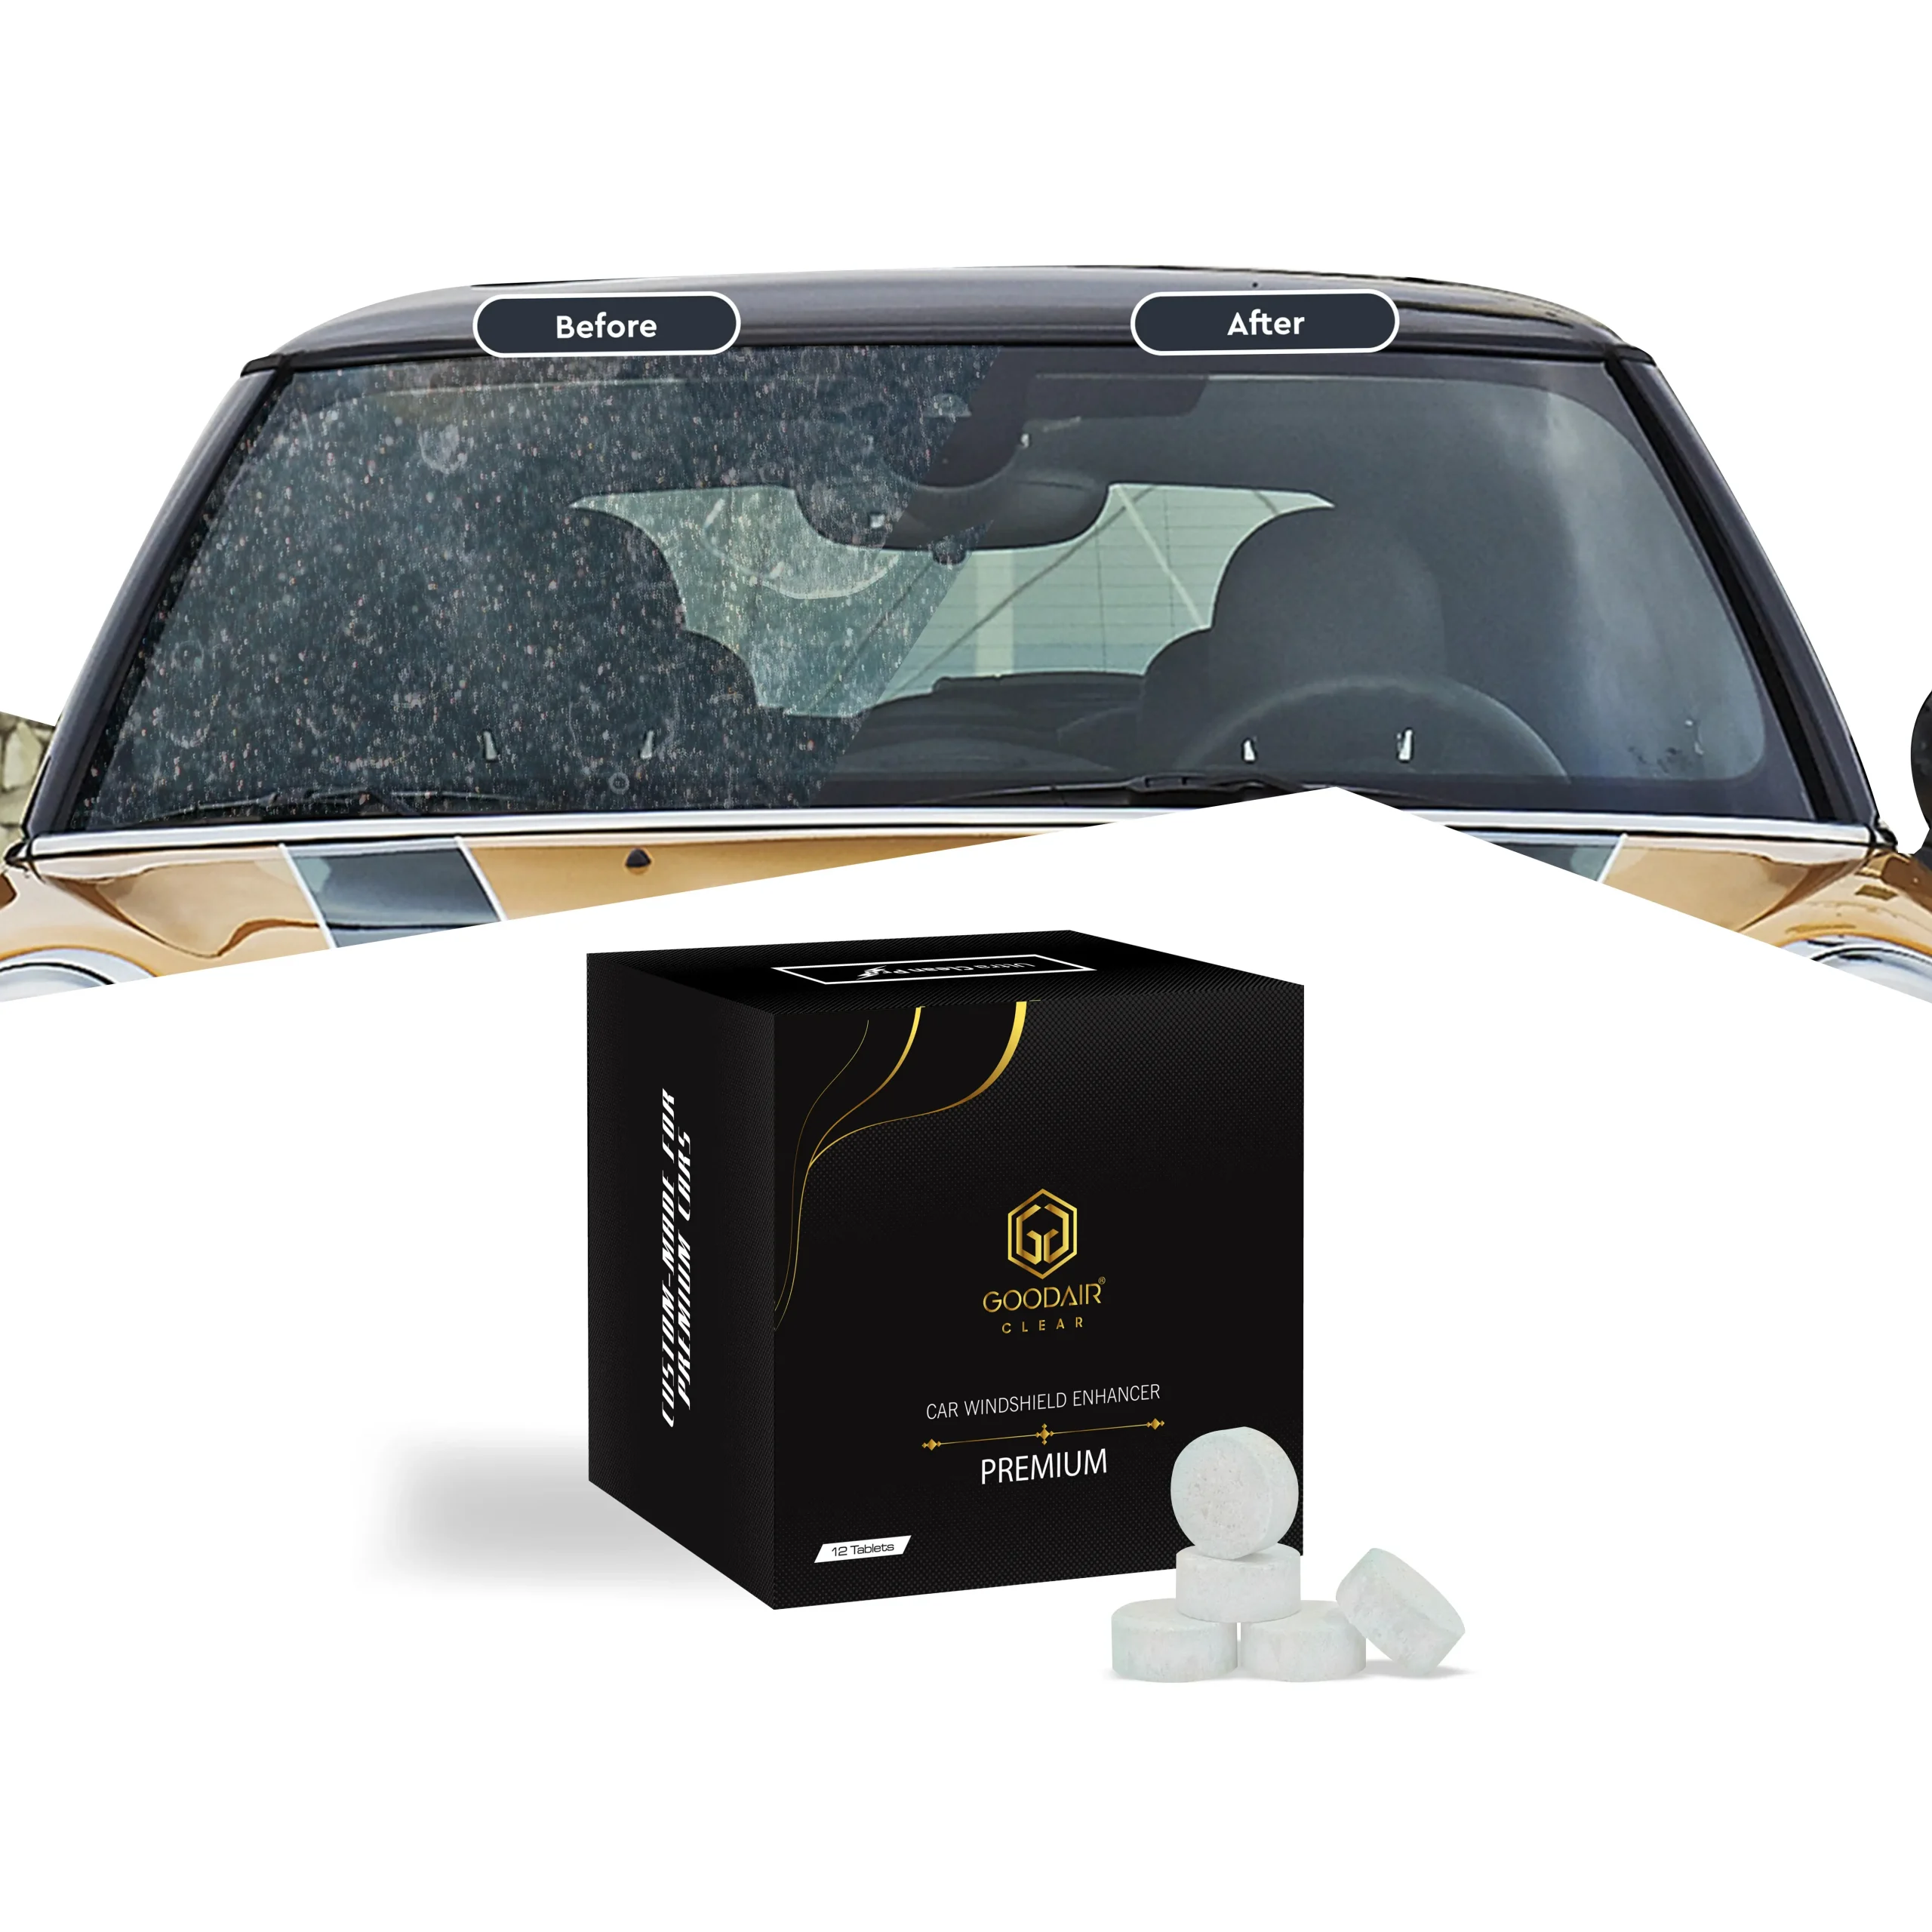 GOODAIR Clear Car Windshield Enhancer, Premium